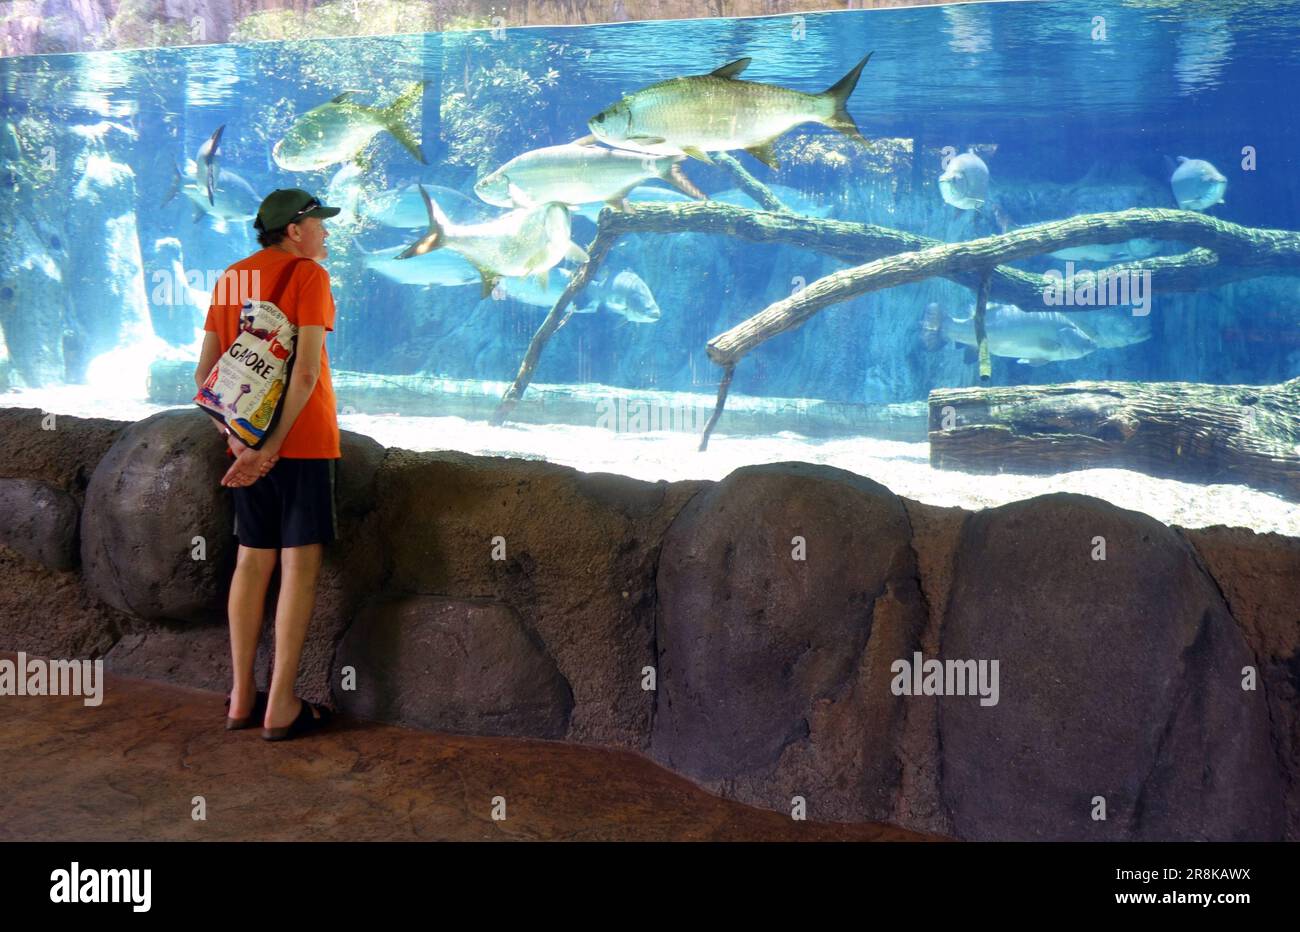 Ein Mann, der einen Tank voller großer Tarponfische sieht, River Wonders Ausstellung, Singapore Zoo. Kein MR oder PR Stockfoto